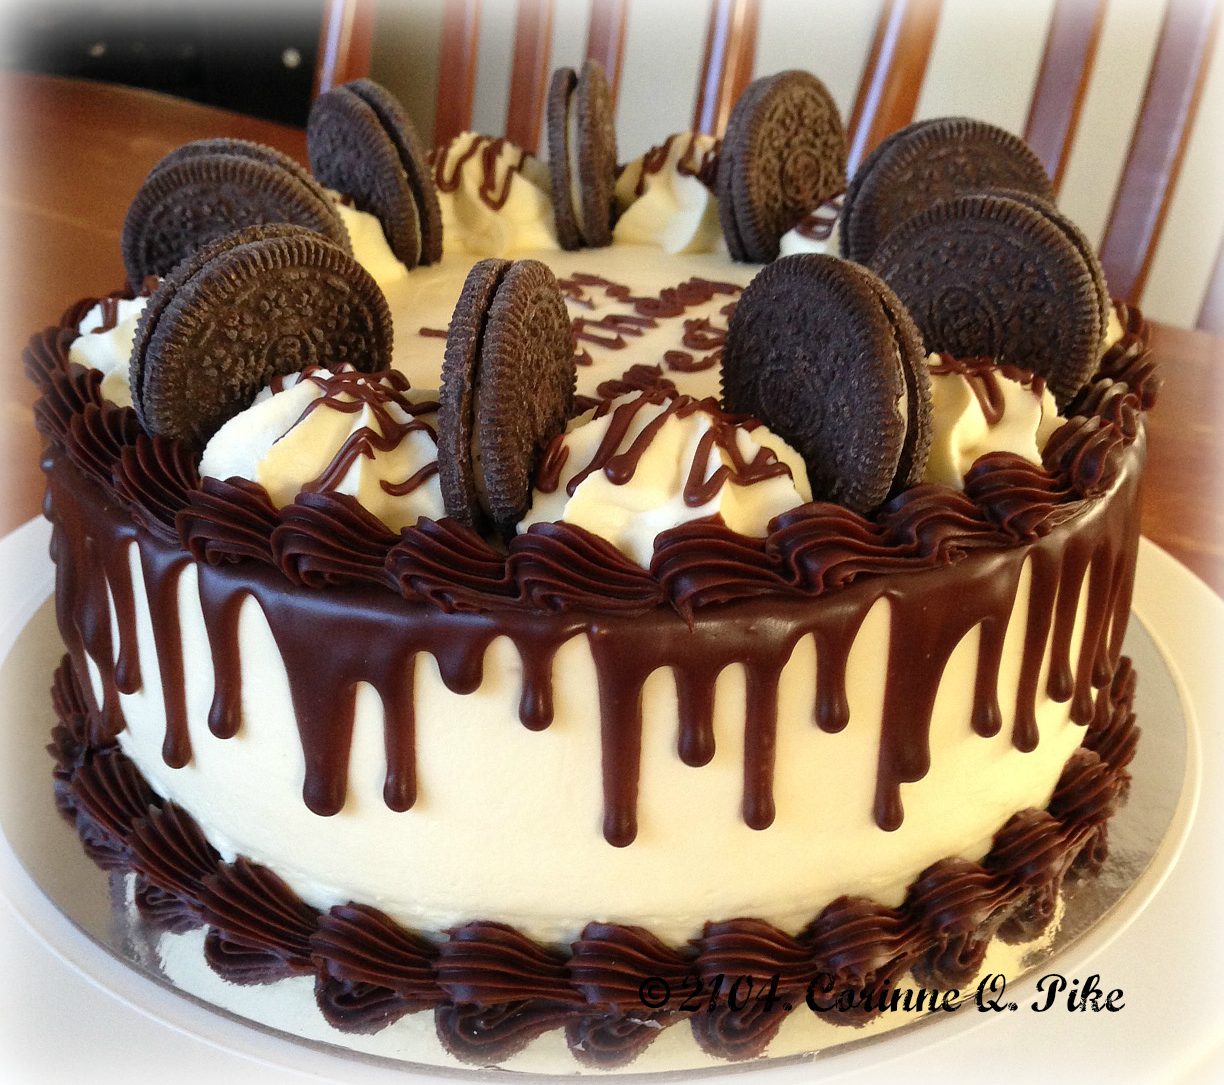 Украшение торт конфетами: Украшение торта конфетами и шоколадками и как украсить торт